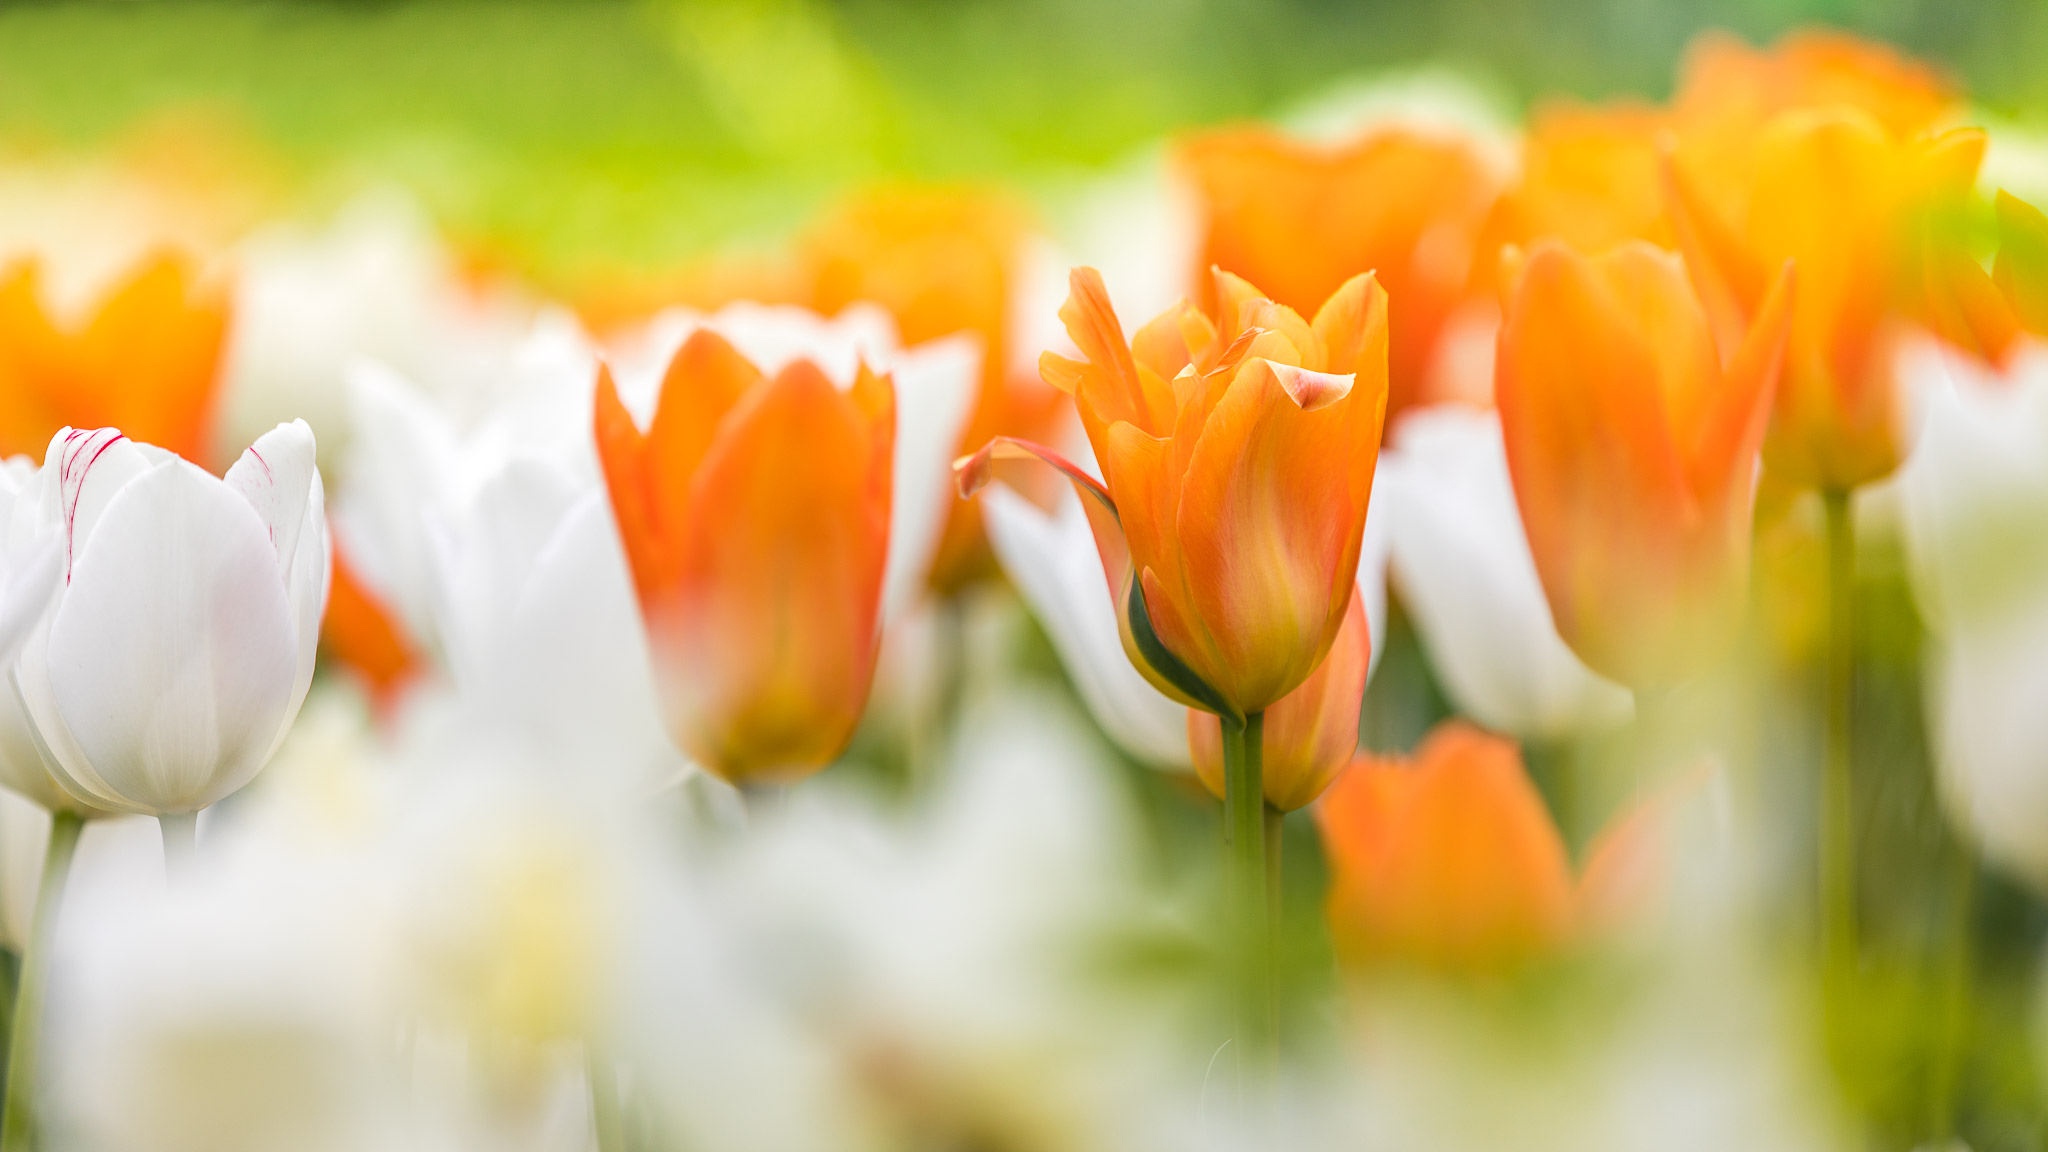 Download mobile wallpaper Nature, Flowers, Summer, Flower, Blur, Earth, Tulip, White Flower, Orange Flower for free.